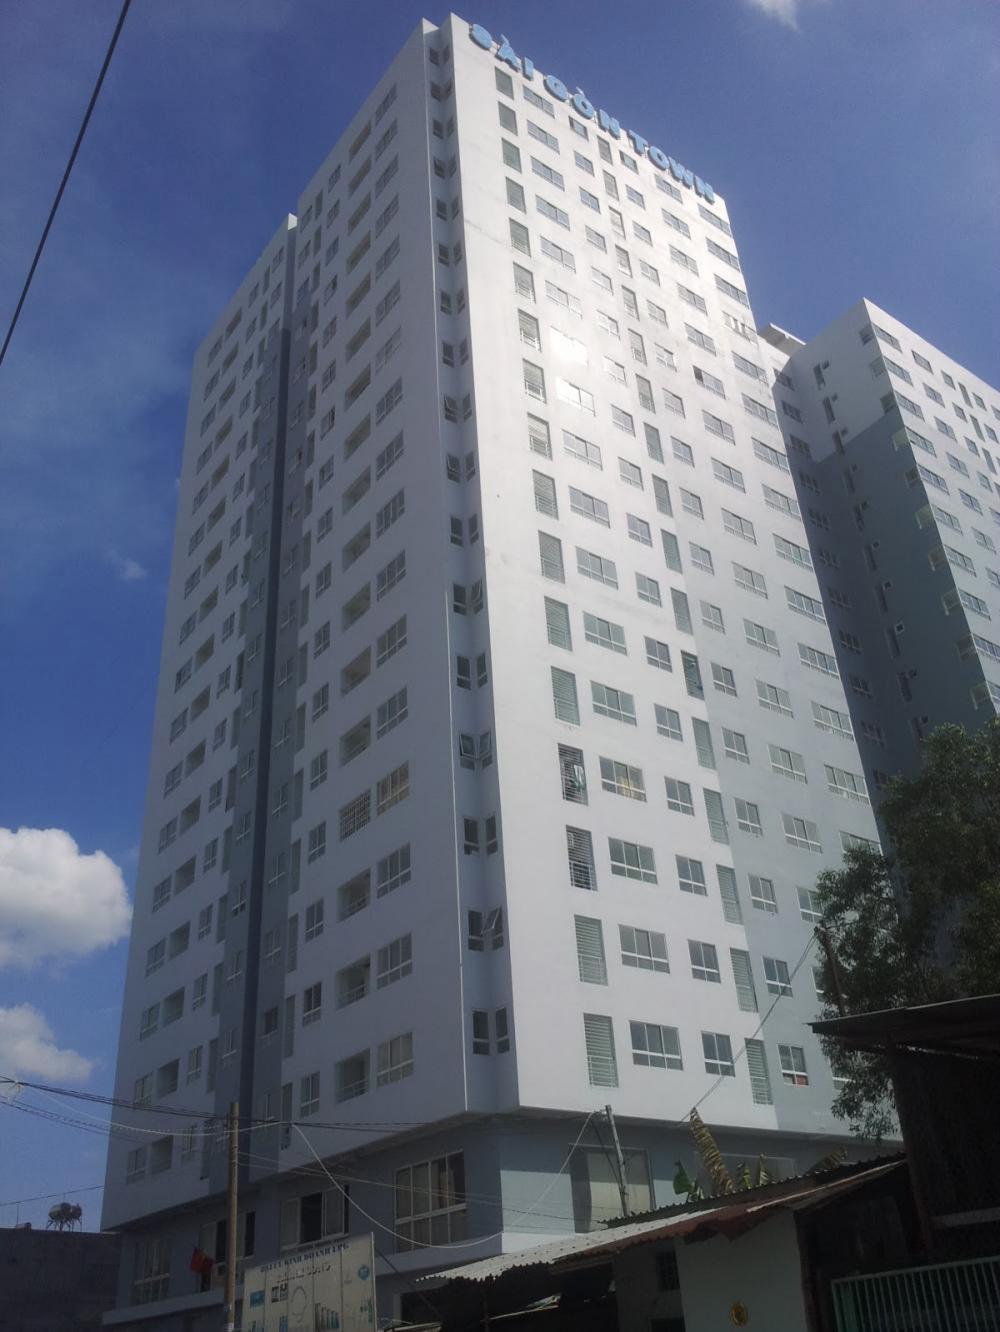 Cần cho thuê căn hộ Sài Gòn Town, DT 65m2, 2PN, 2 WC, có nội thất cơ bản. Giá thuê 7.5 triệu/th